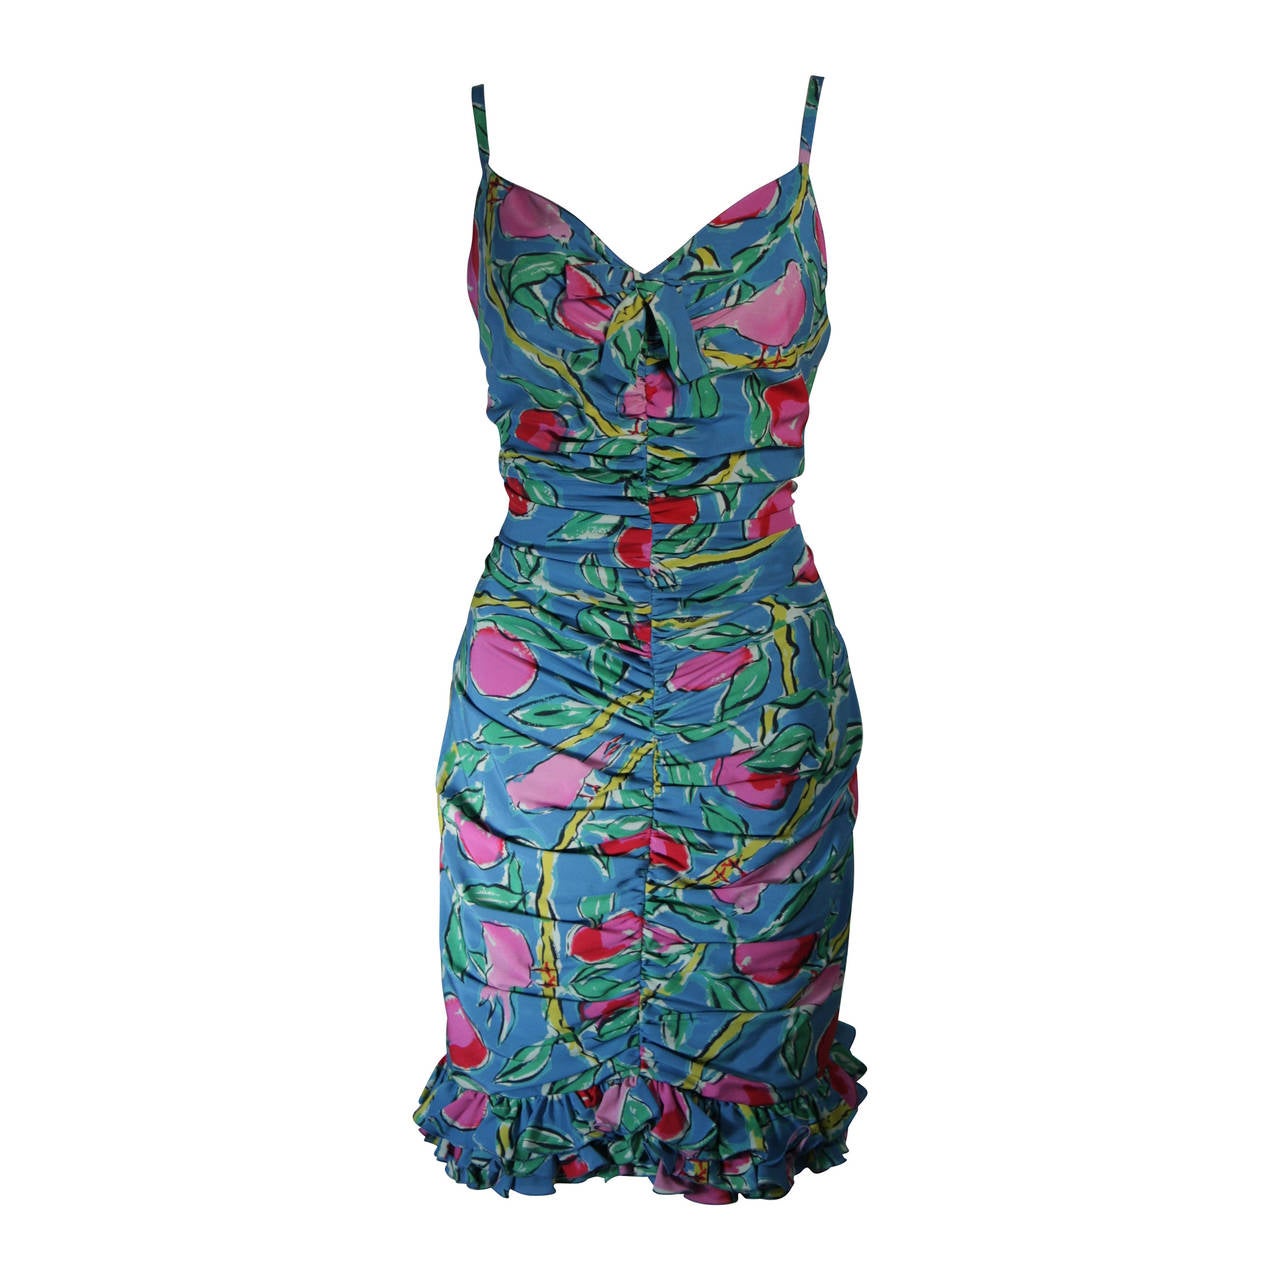 Ungaro Tropical Print Silk Cocktaili Dress with Bird Motif Size 8